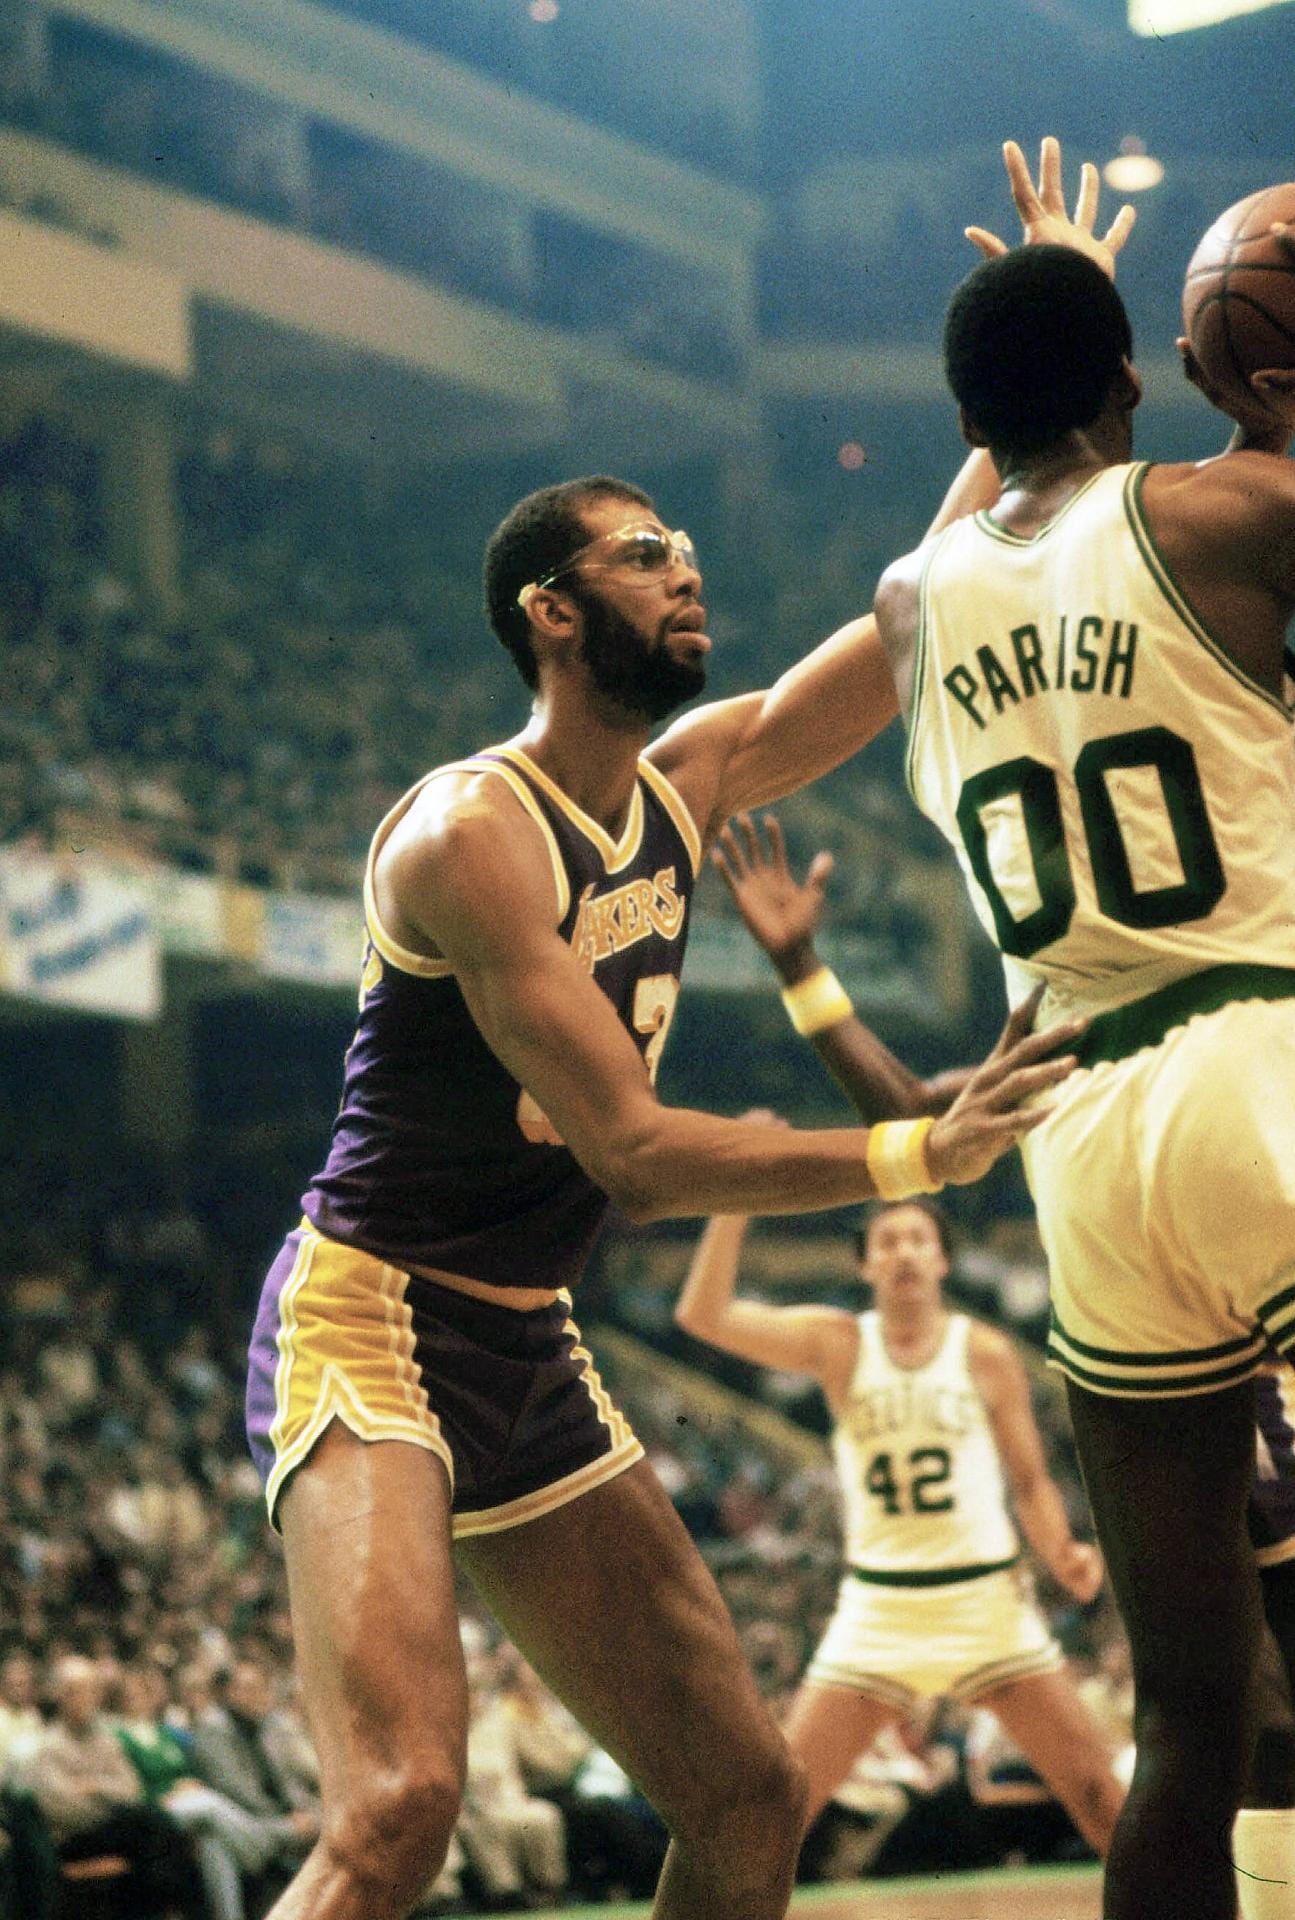 Kareem Abdul-Jabbar spielte ganze 20 Jahre in der NBA (1969 - 89). Bevor er zum Islam konvertierte, hieß er Lewis Alcindor. Sechs Meisterschaften konnte Jabbar erringen, seine erste mit den Milwaukee Bucks, den anderen mit den L.A. Lakers. Markenzeichen des sechsmaligen MVPs war der "Skyhook", ein sehr eleganter Hakenwurf. Diese Technik eignete sich der Center an, weil zu seiner College-Zeit das Dunken verboten war. Bis heute konnte kein Spieler so viele Punkte sammeln wie die Nummer 33.